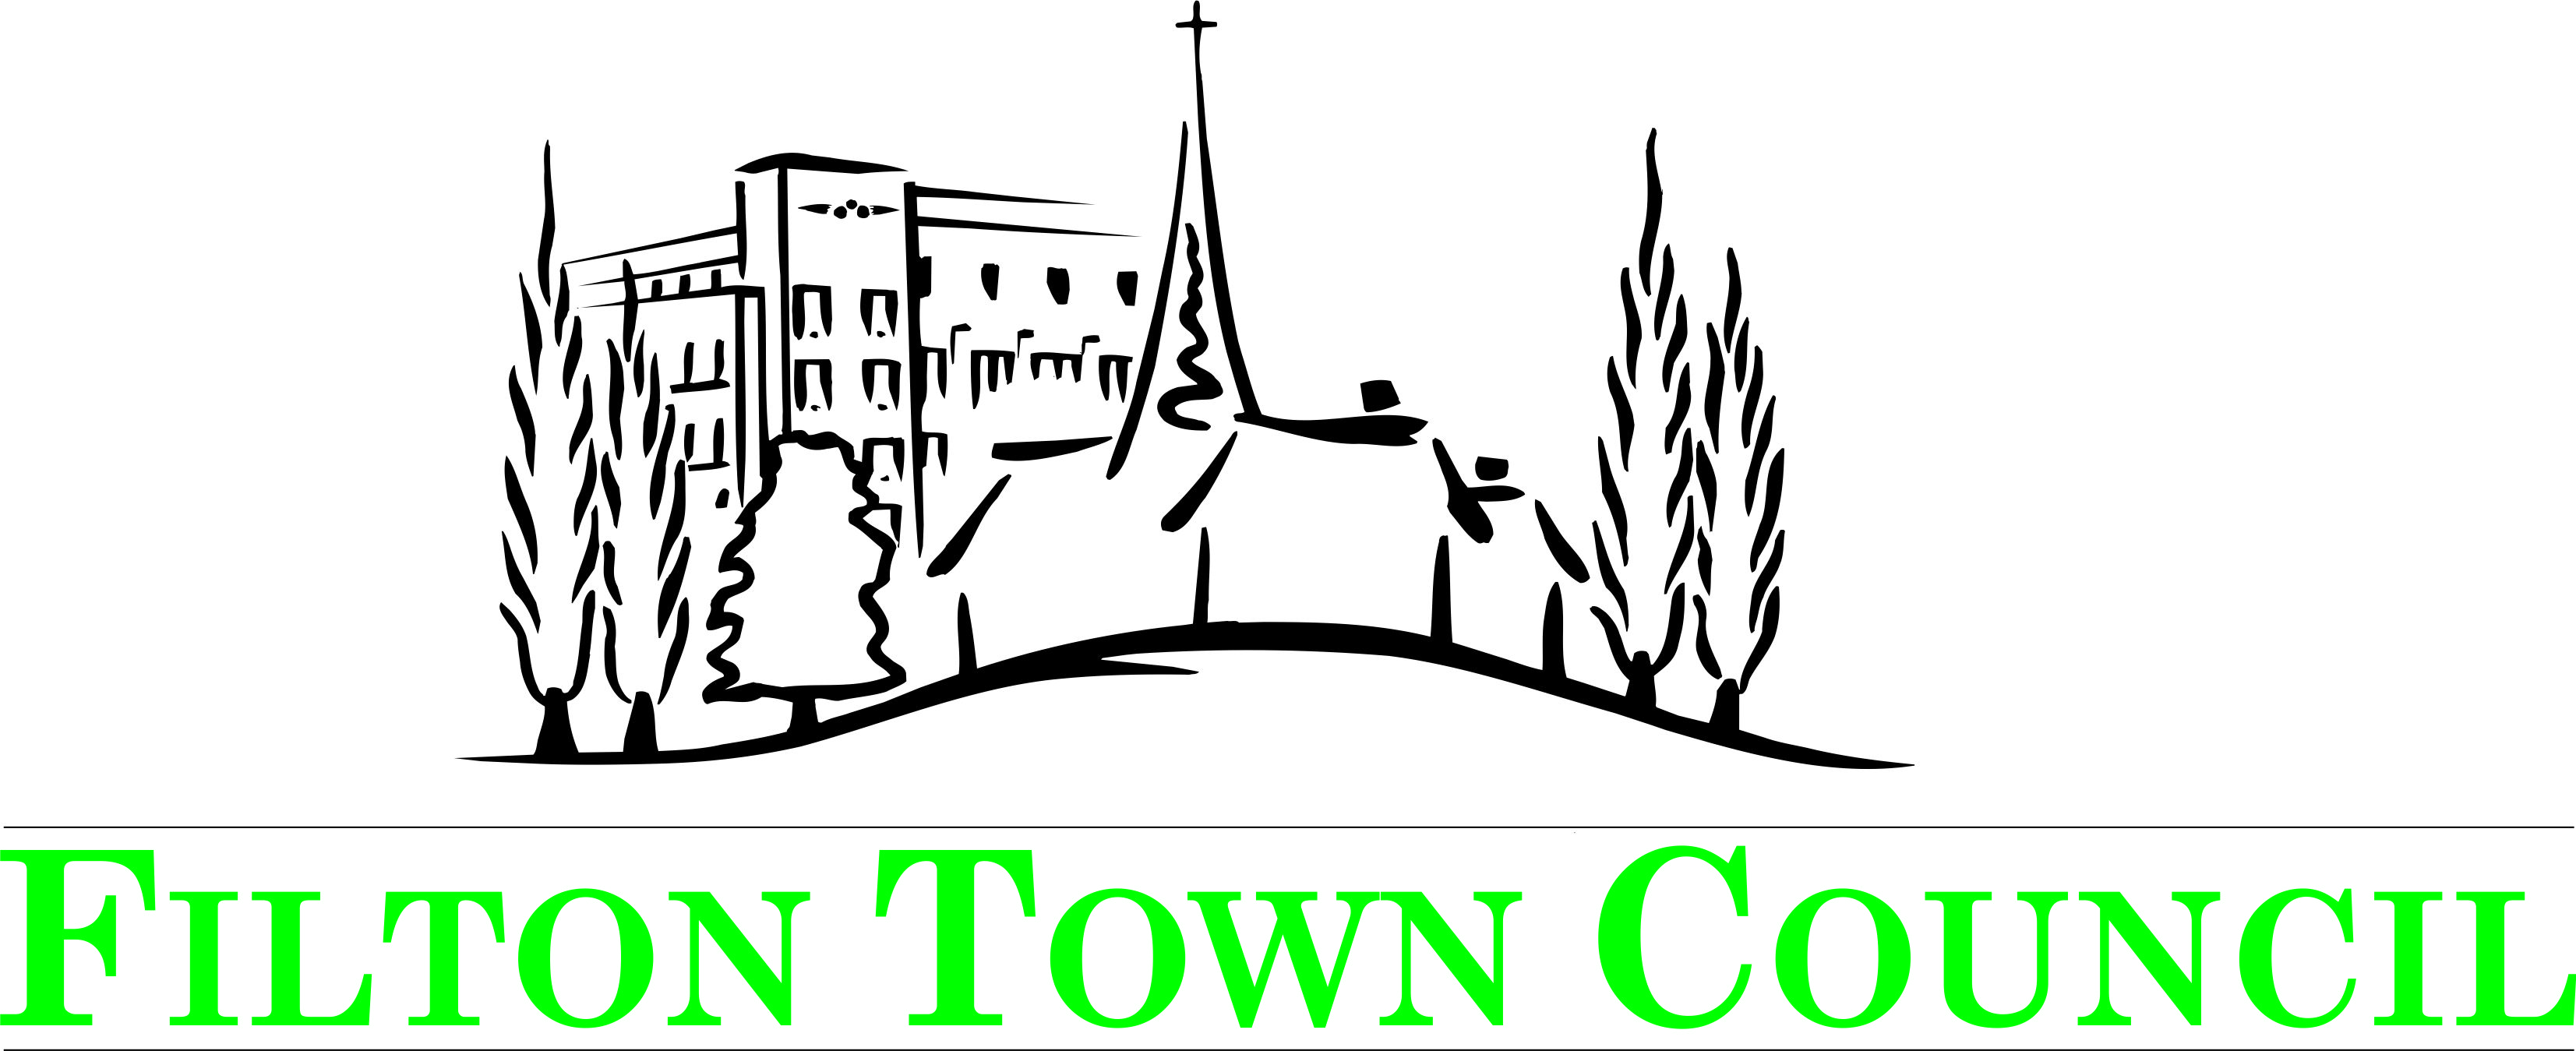 logo for Filton Town Council